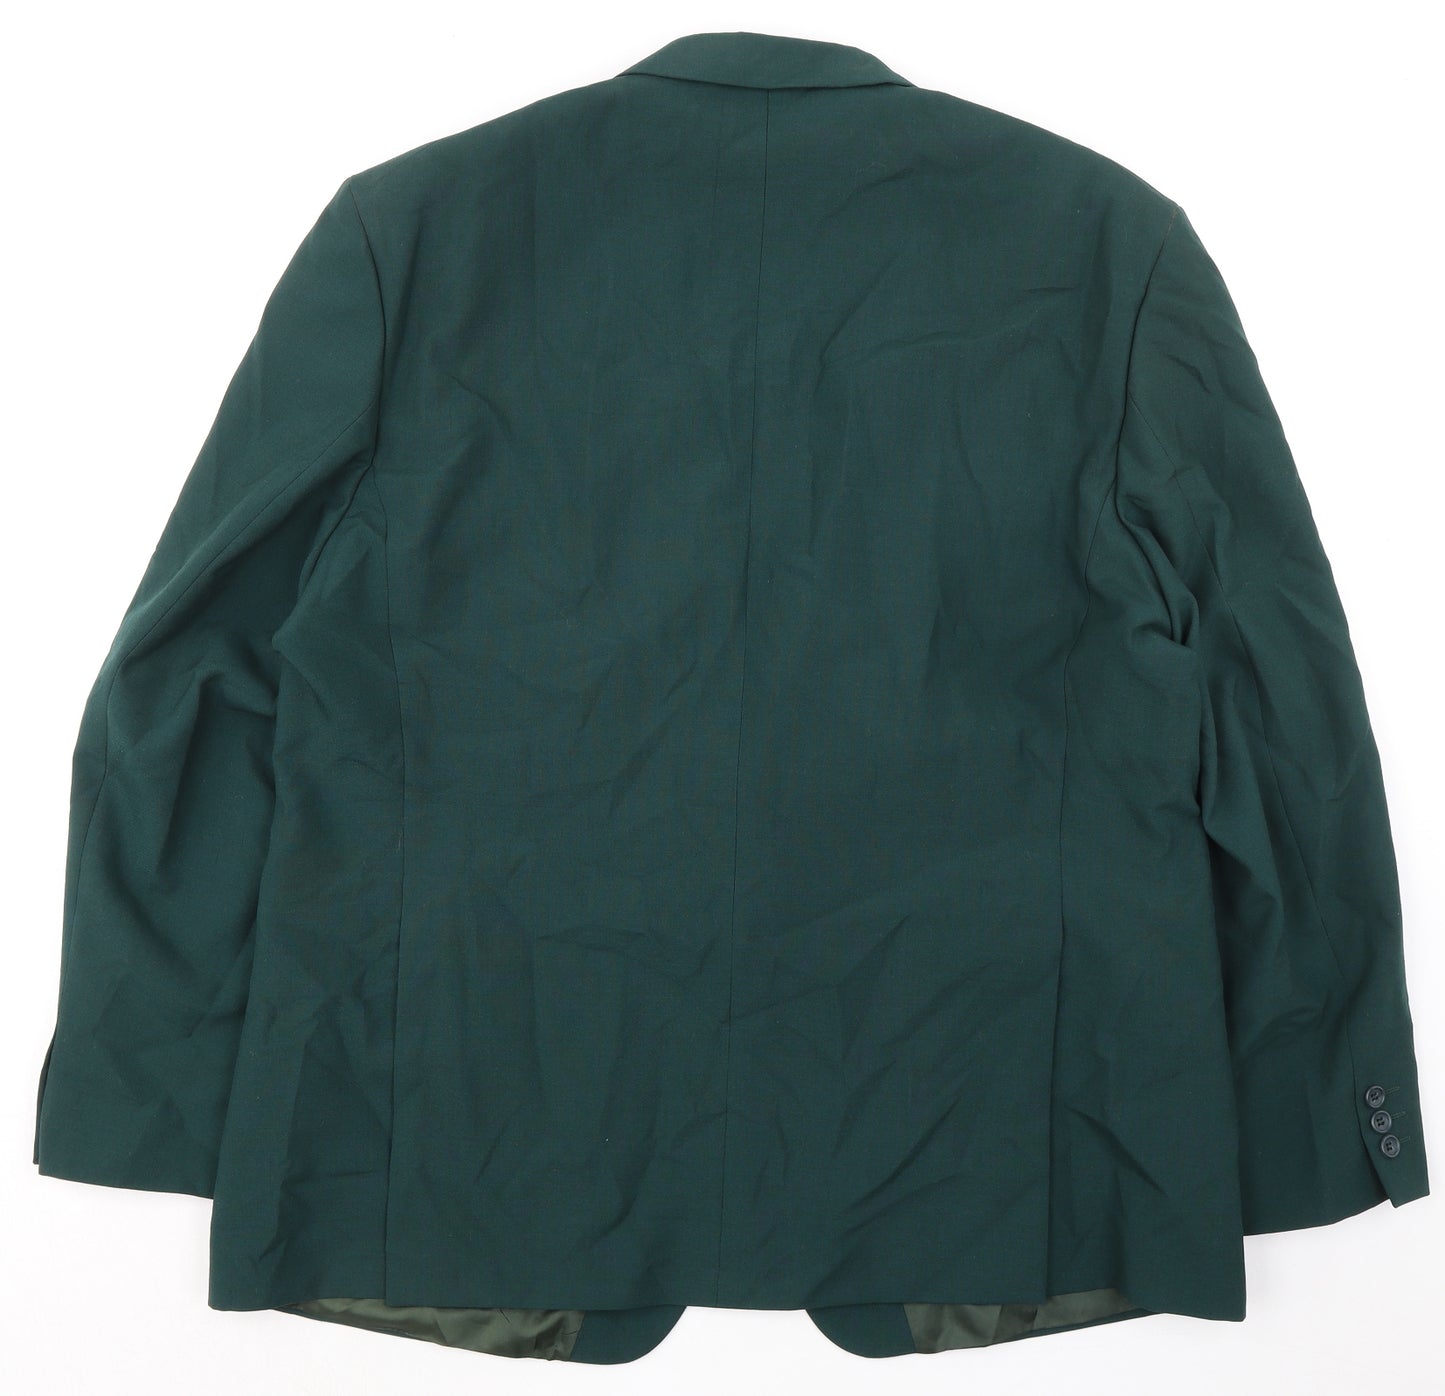 Varteks Mens Green Acetate Jacket Suit Jacket Size 48 Regular